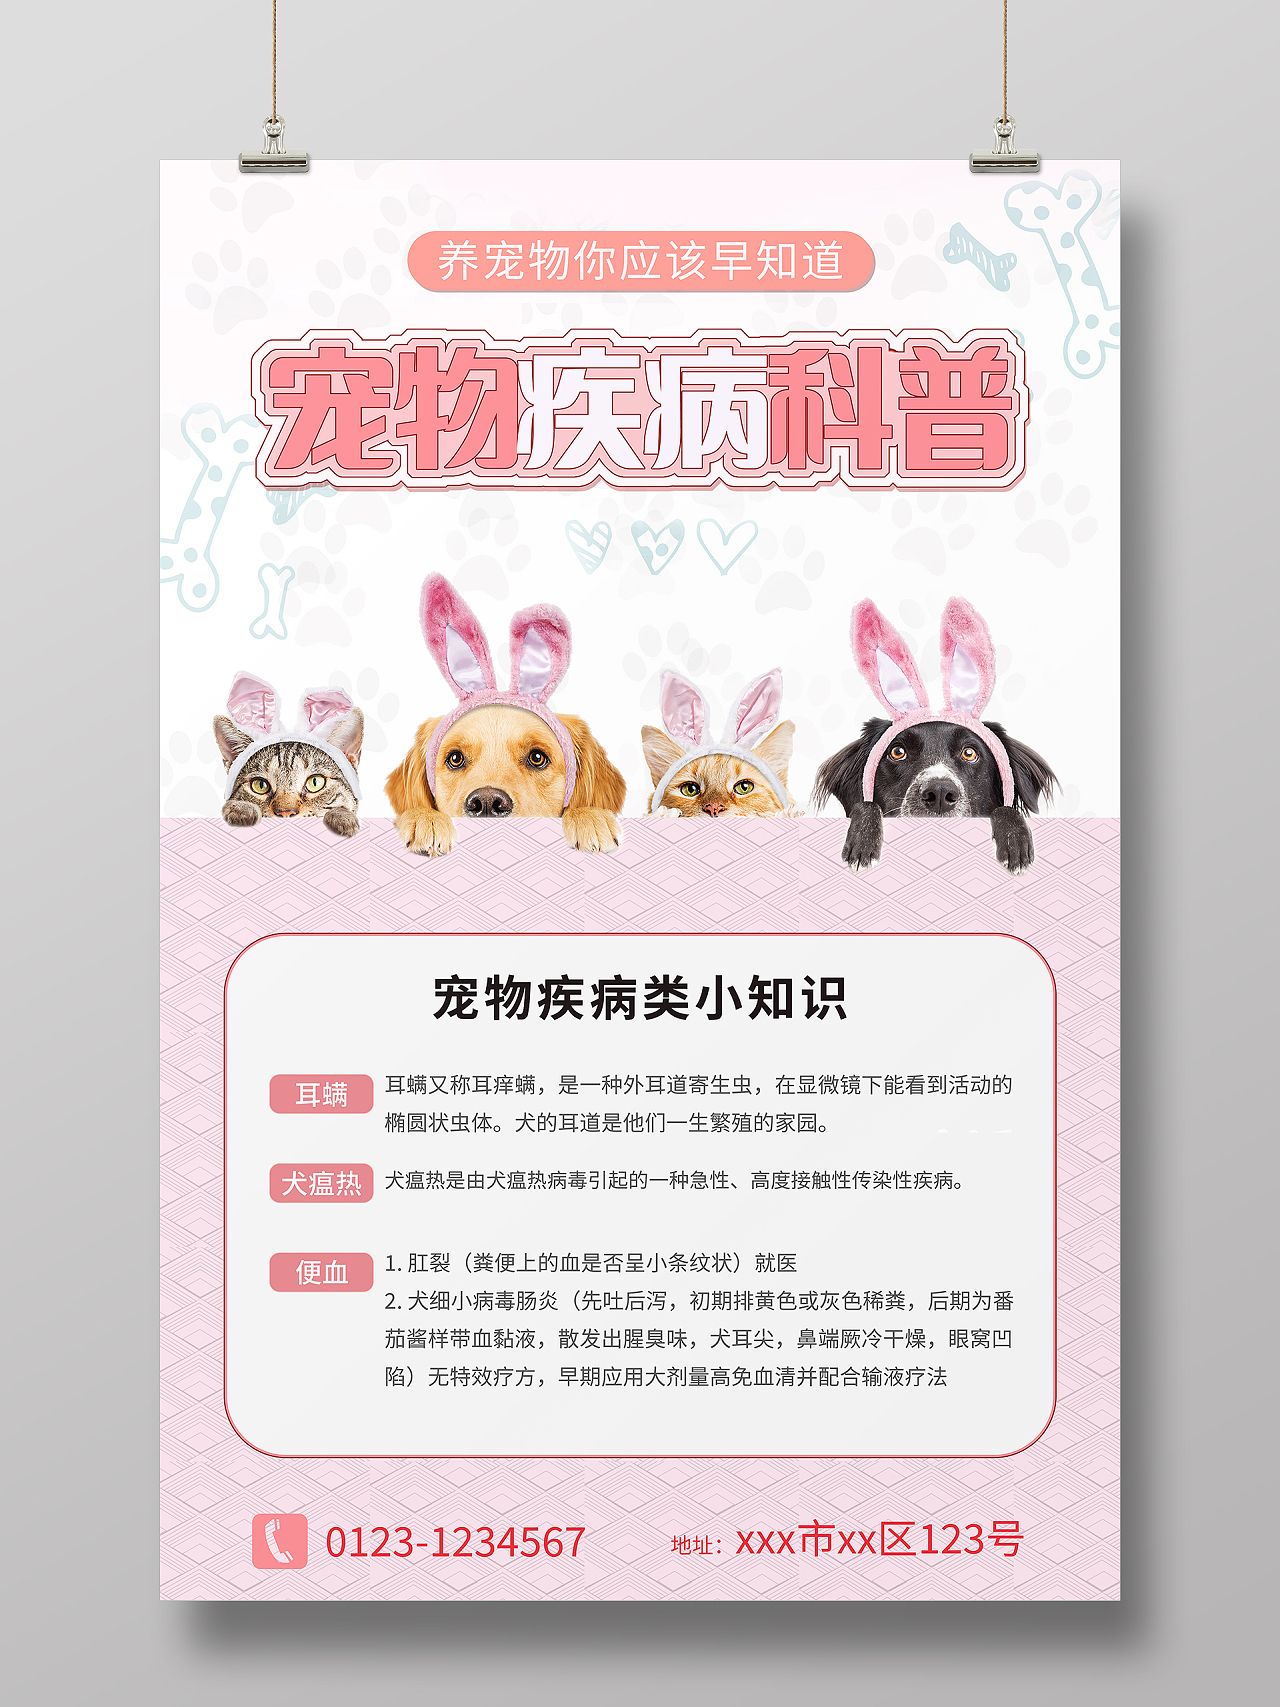 粉色背景简约风格宠物疾病科普宣传海报宠物海报